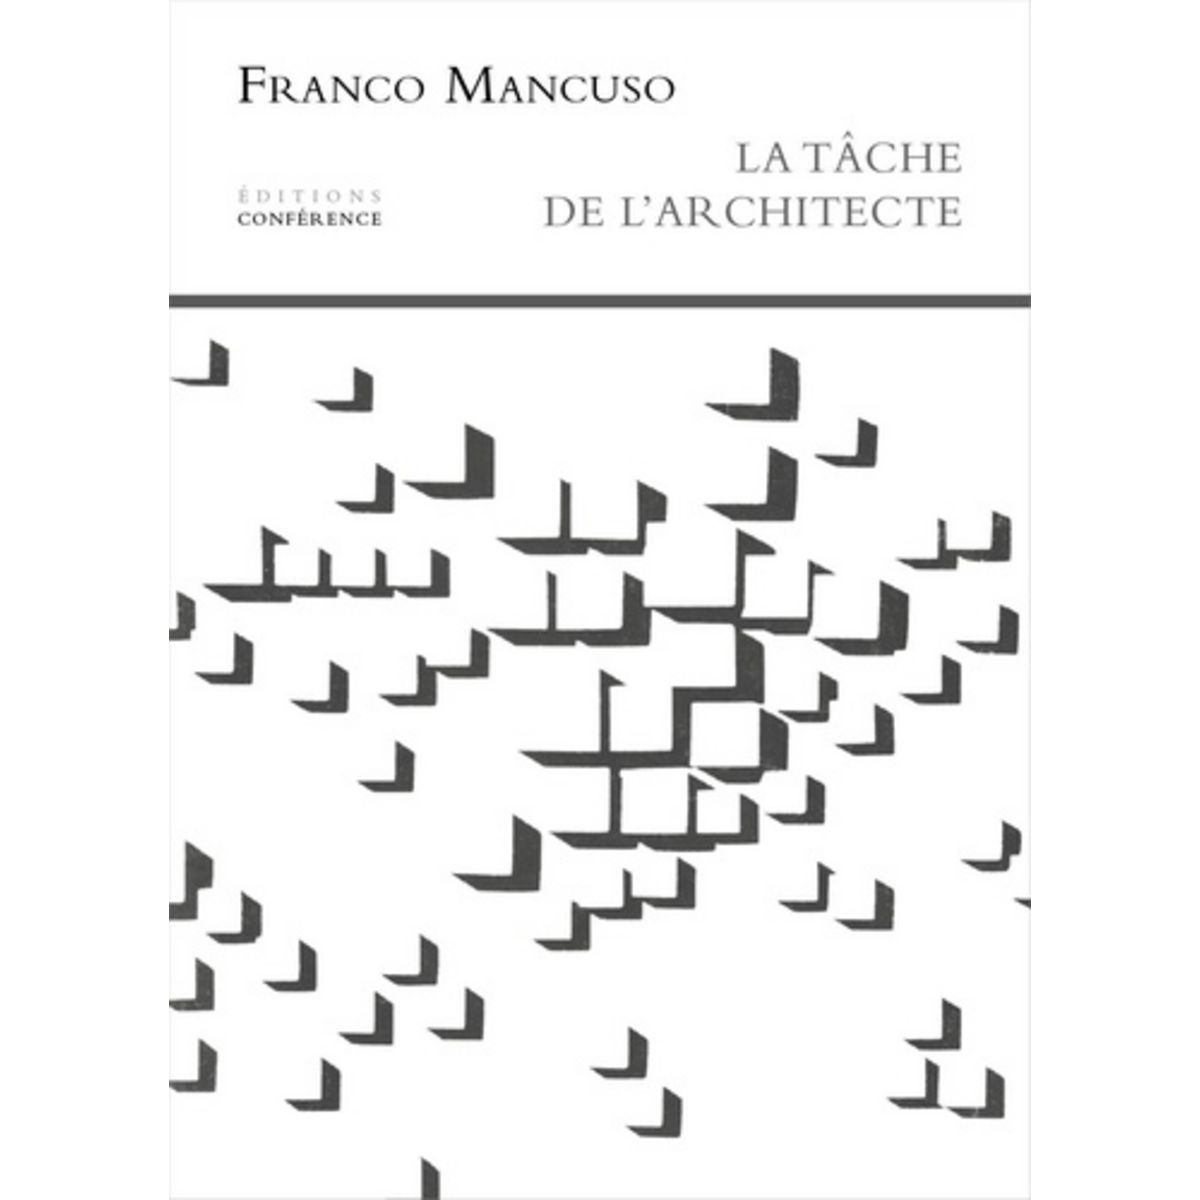  LA TACHE DE L'ARCHITECTE, Mancuso Franco